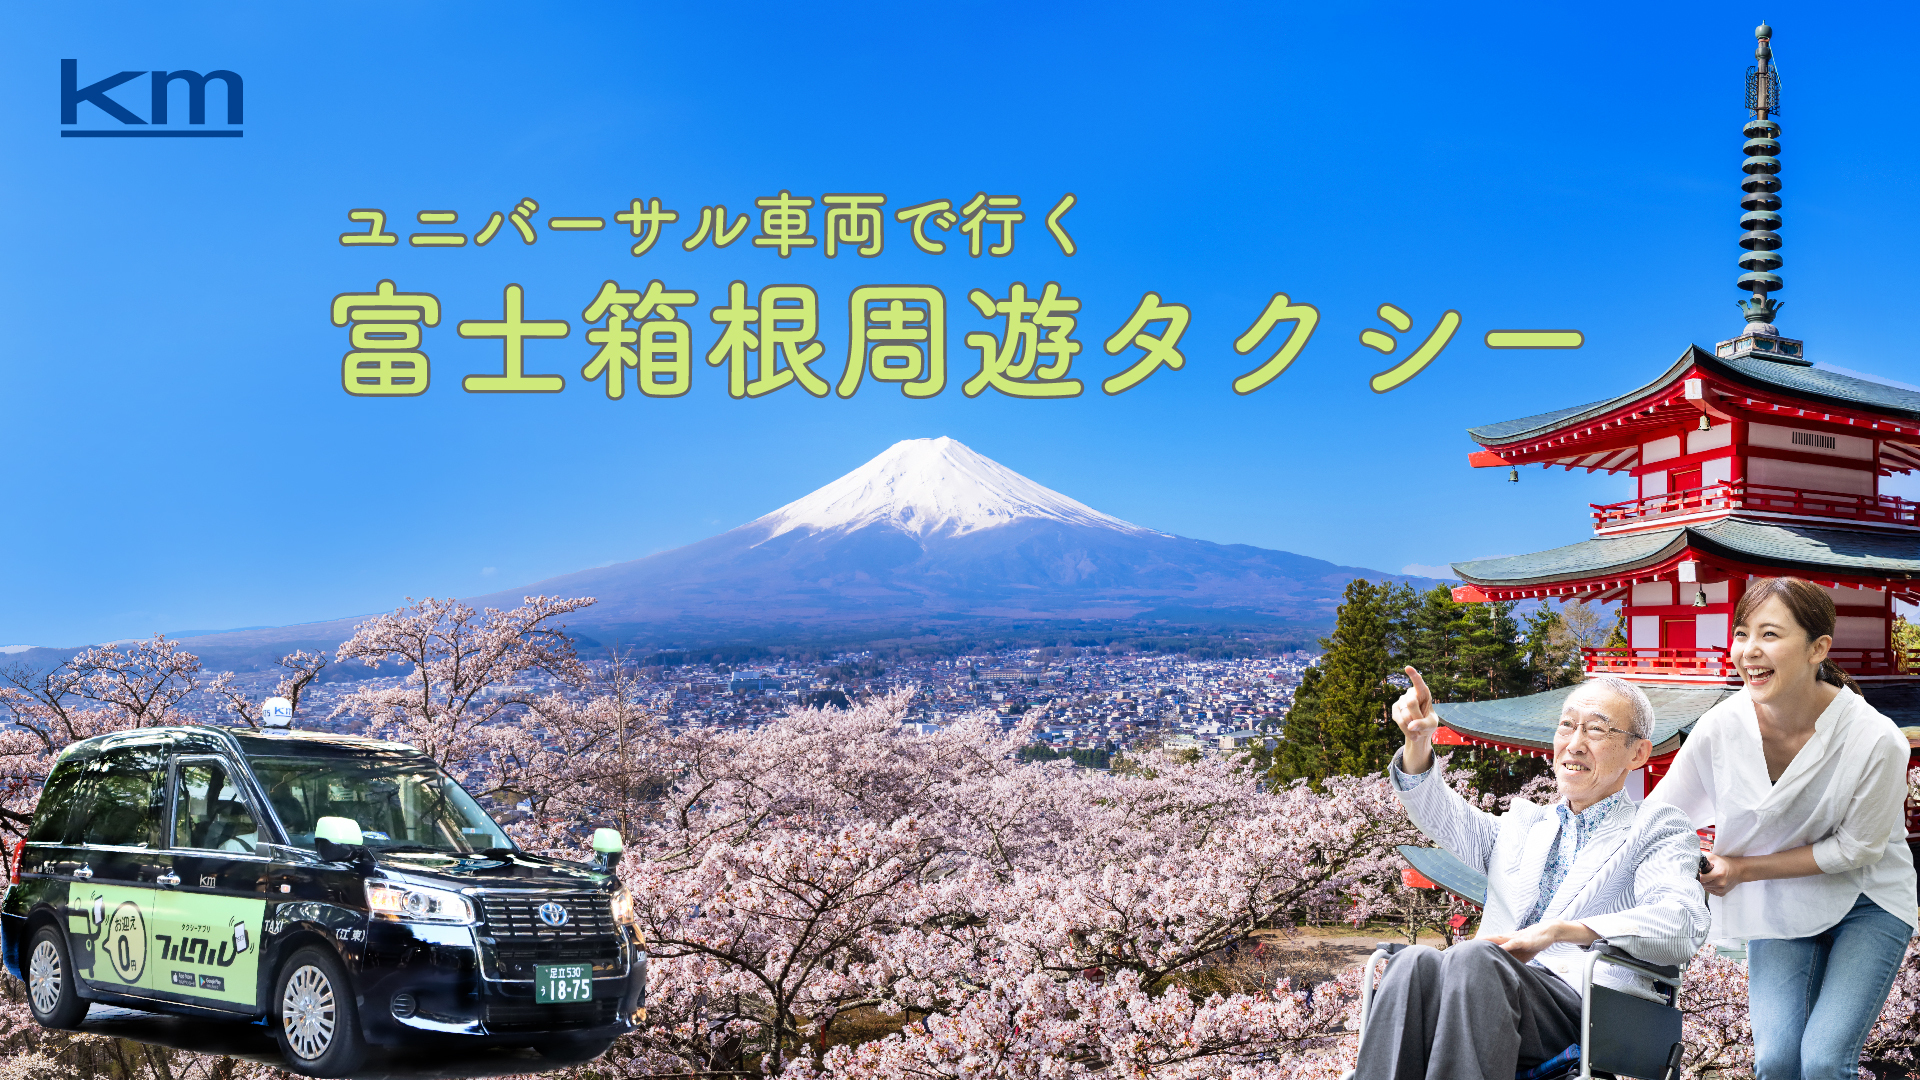 富士山、忍野、箱根ユニバーサル車両で行く
東京発日帰り「富士箱根周遊タクシー」が好評